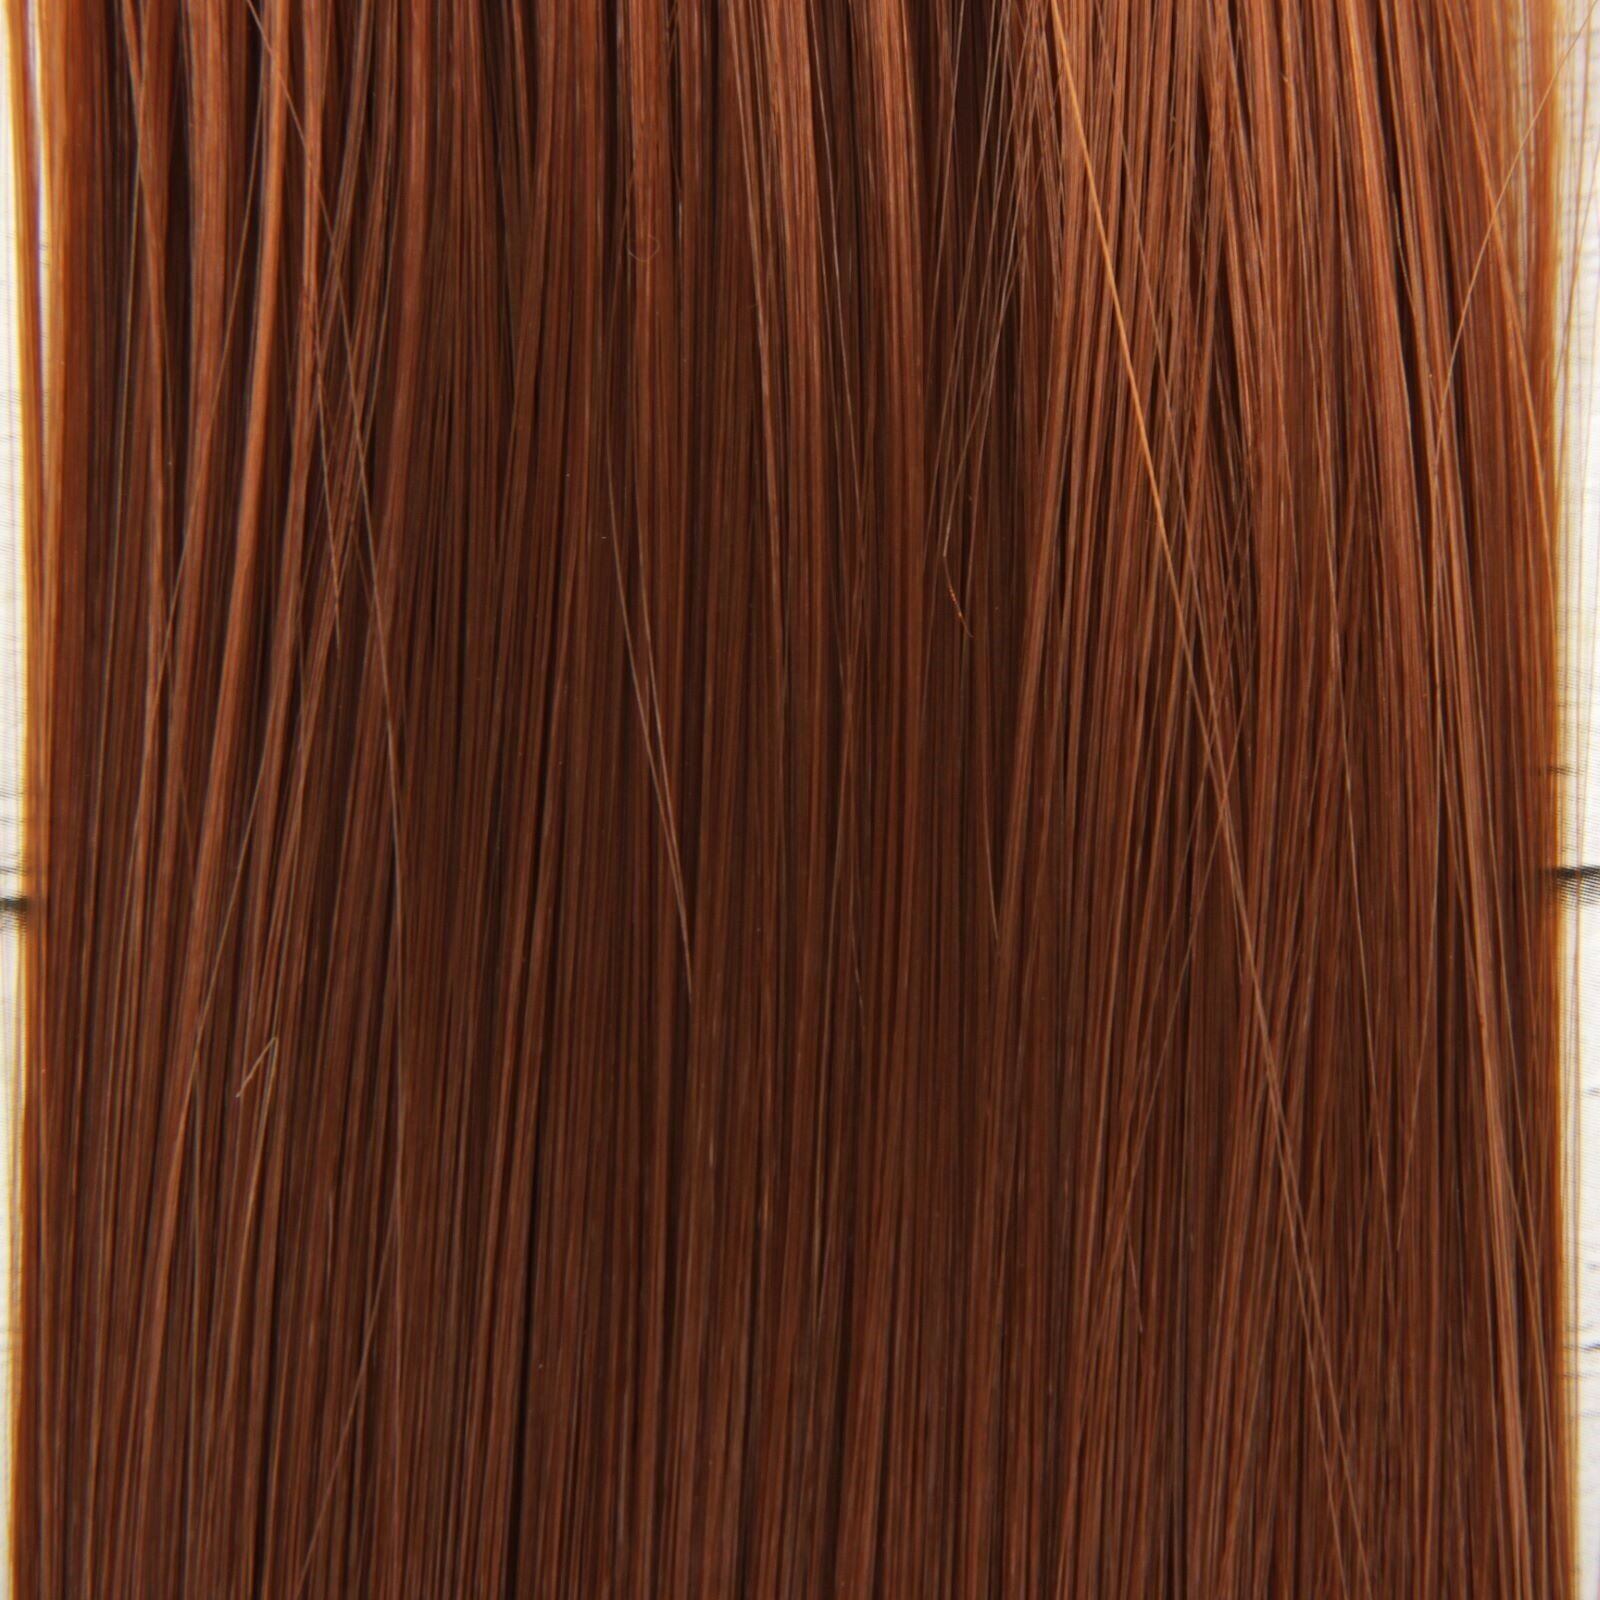 Волосы - тресс для кукол "Школа талантов" длина волос 25 см, ширина 100 см, набор для творчества